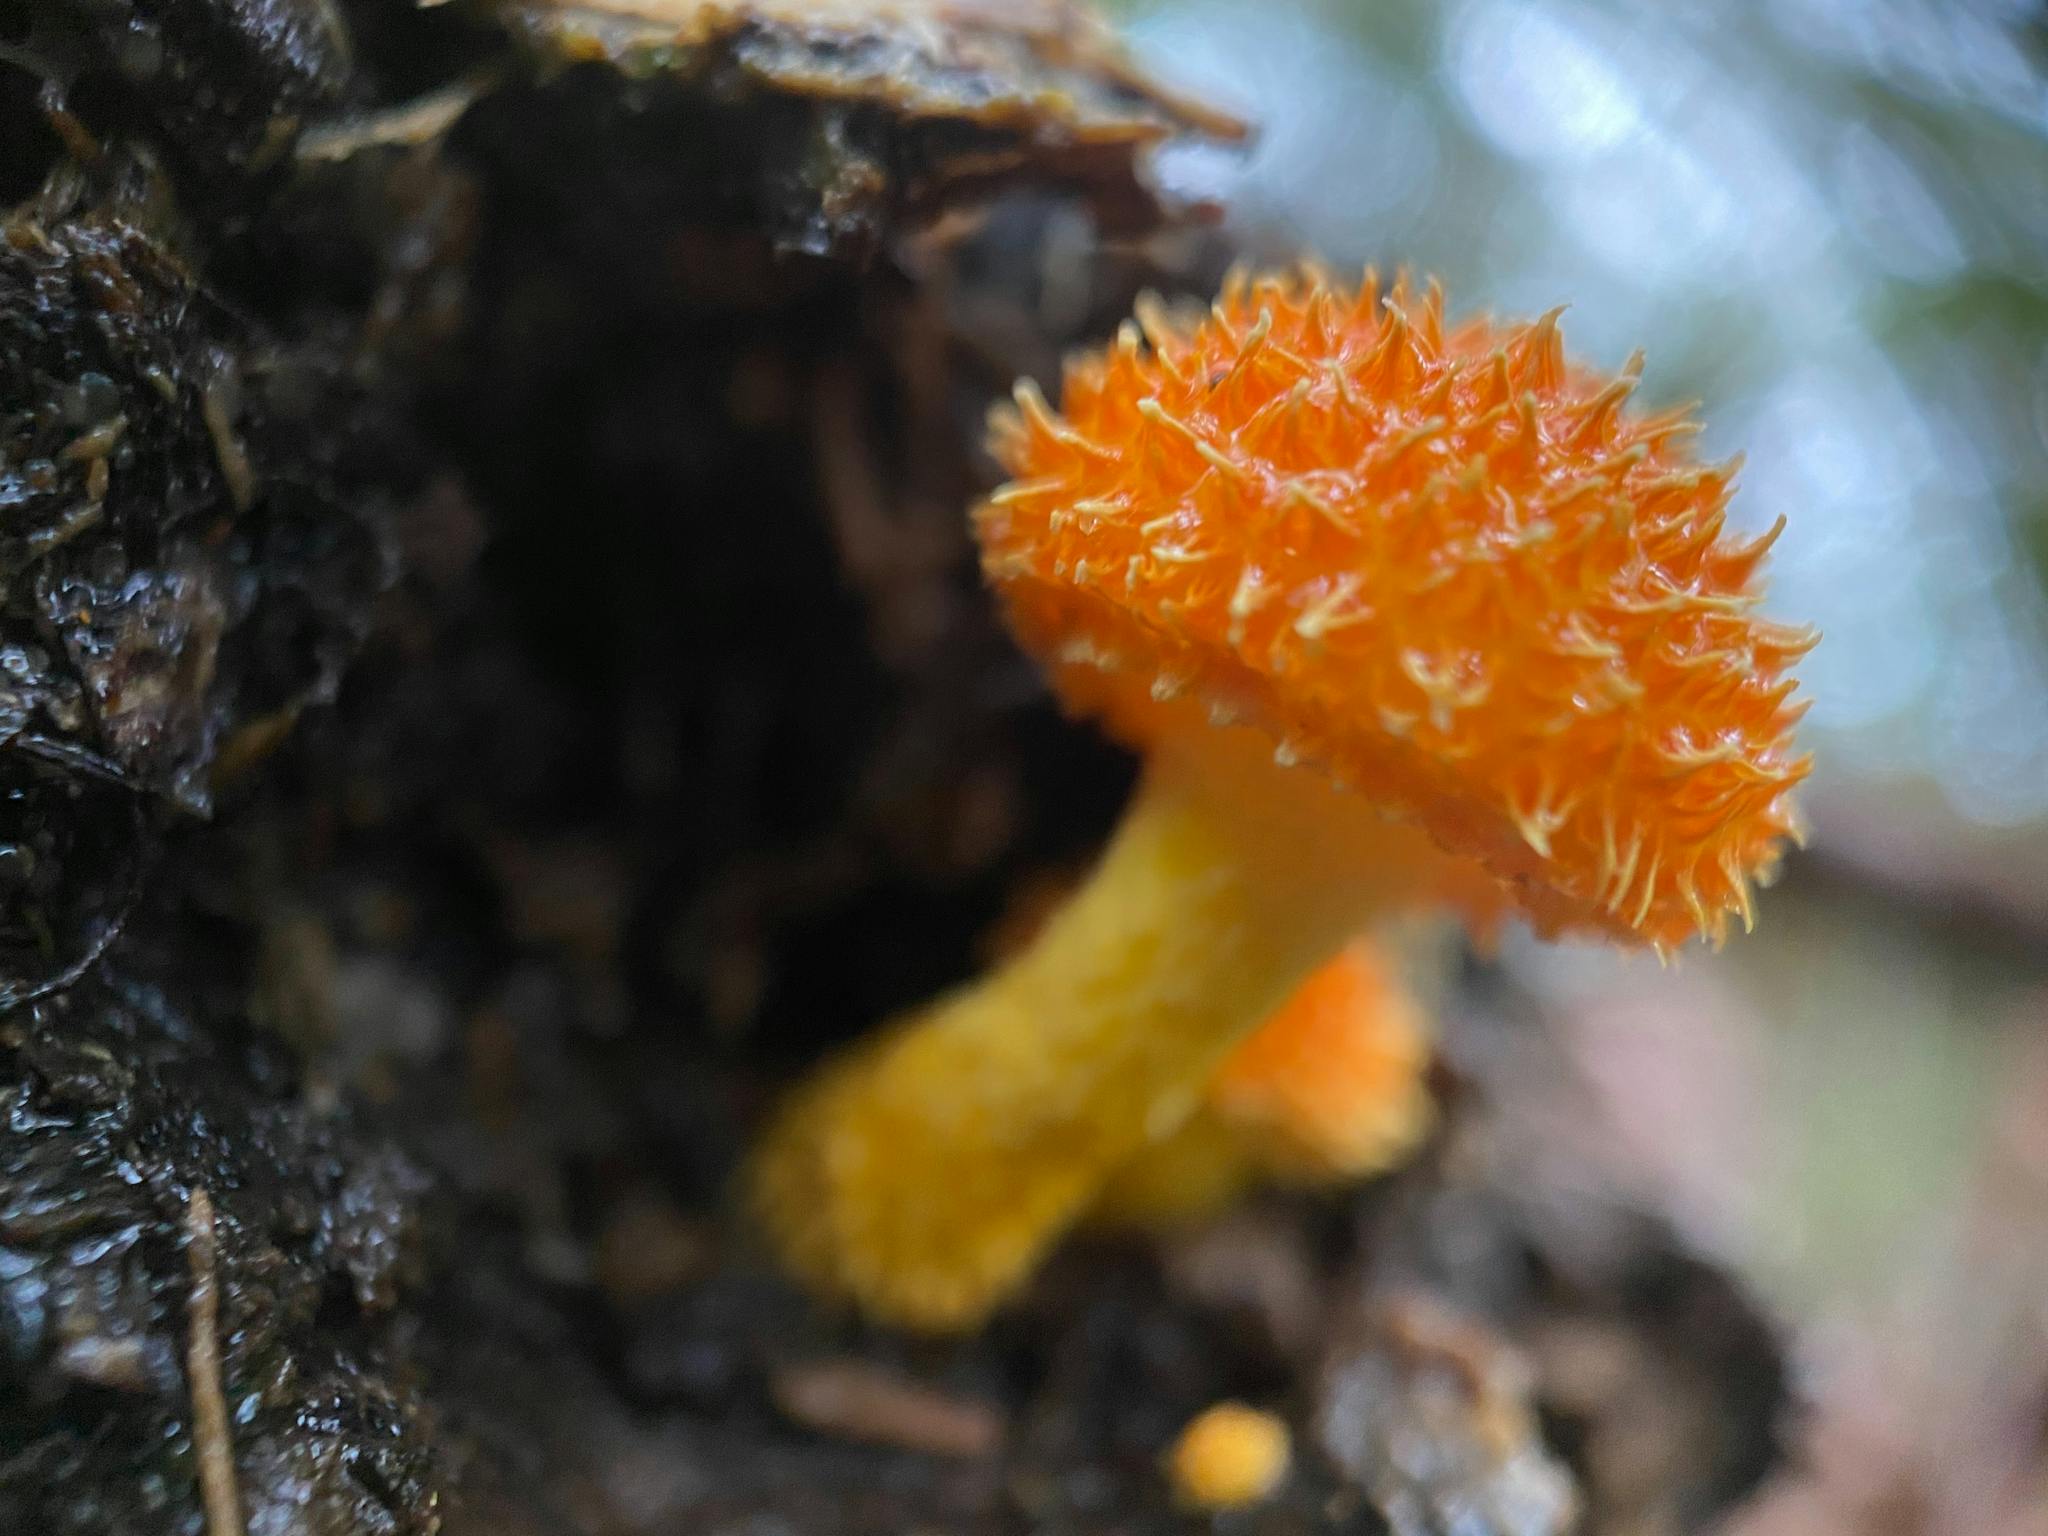 A bright orange fungi